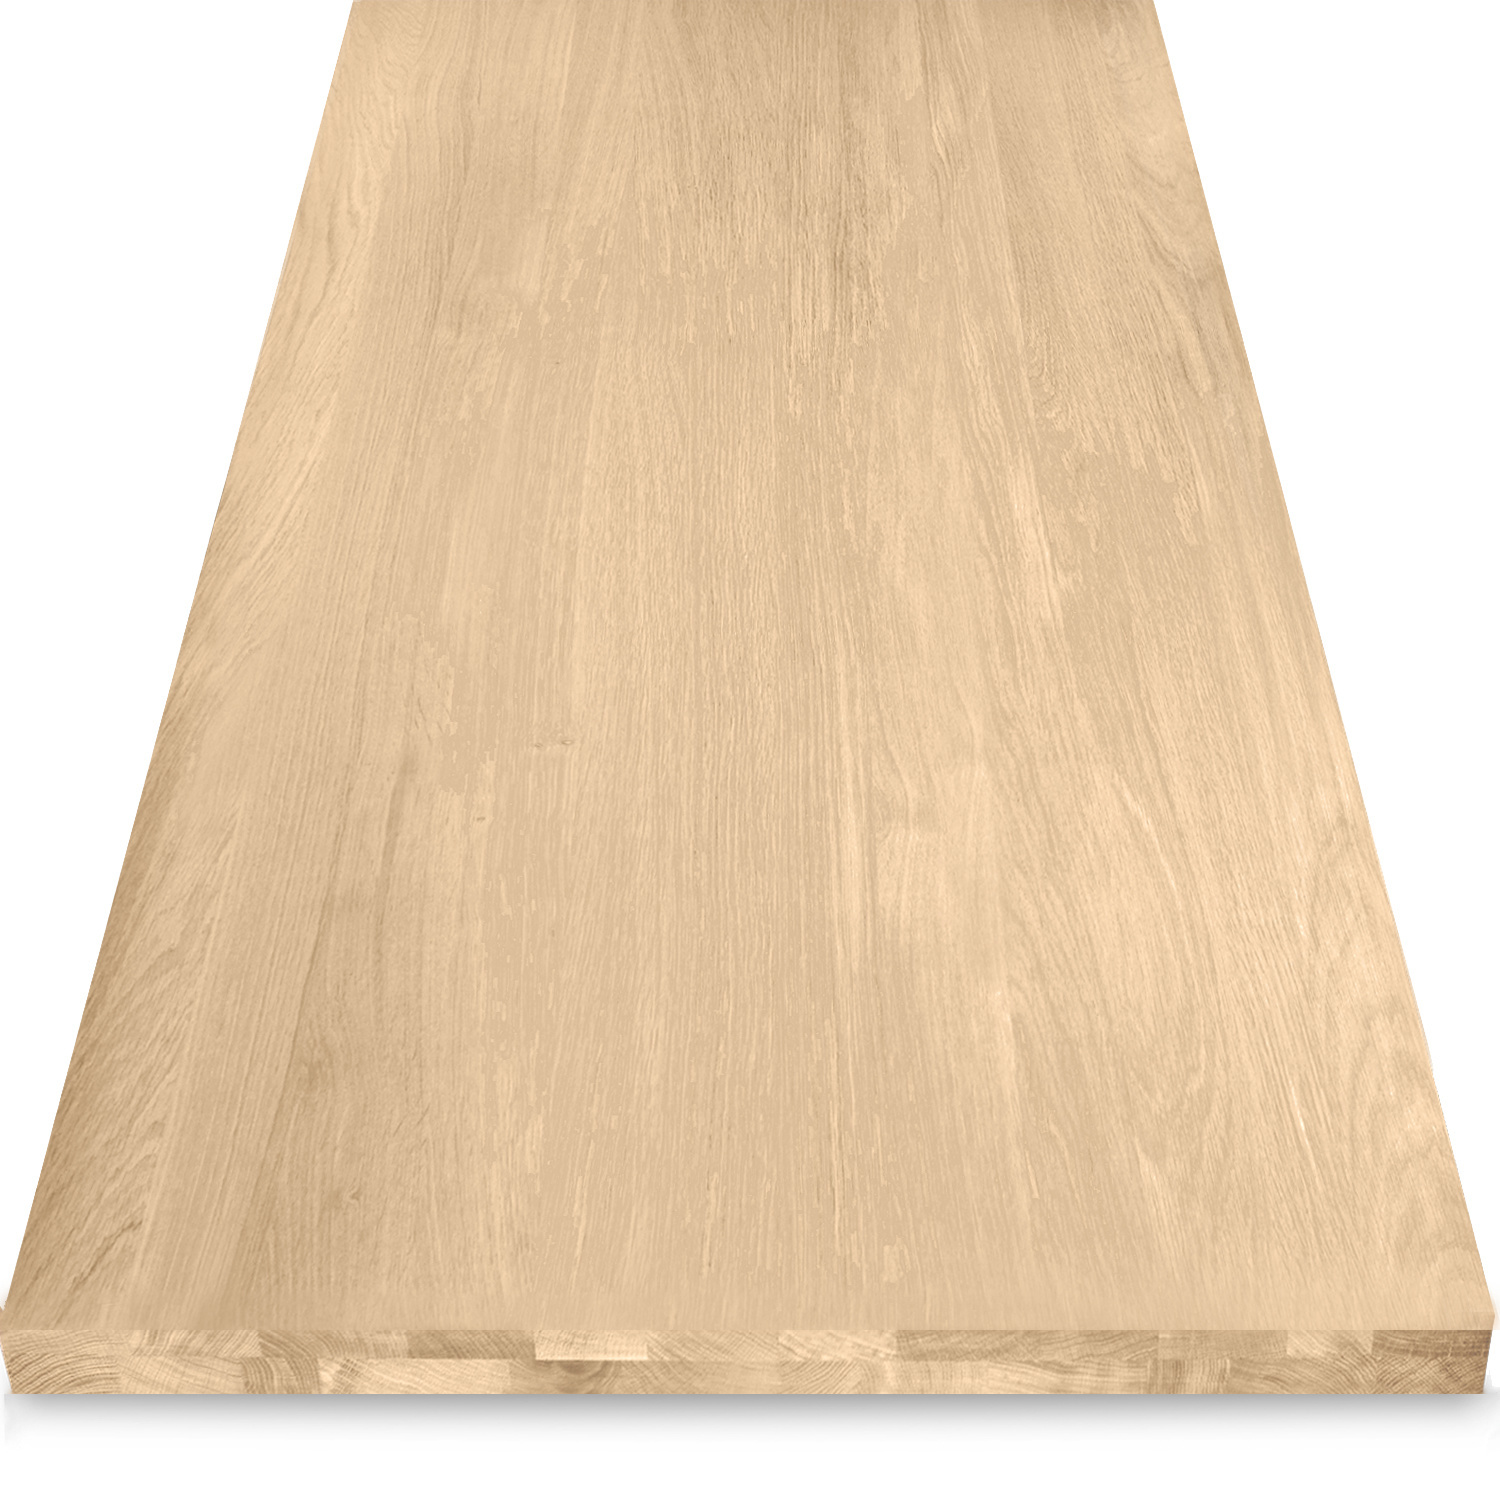  Tischplatte Eiche nach Maß - Aufgedoppelt - 4 cm dick (2-lagig) - Eichenholz A-Qualität - Eiche Tischplatte massiv - verleimt & künstlich getrocknet (HF 8-12%) - 50-120x50-350 cm